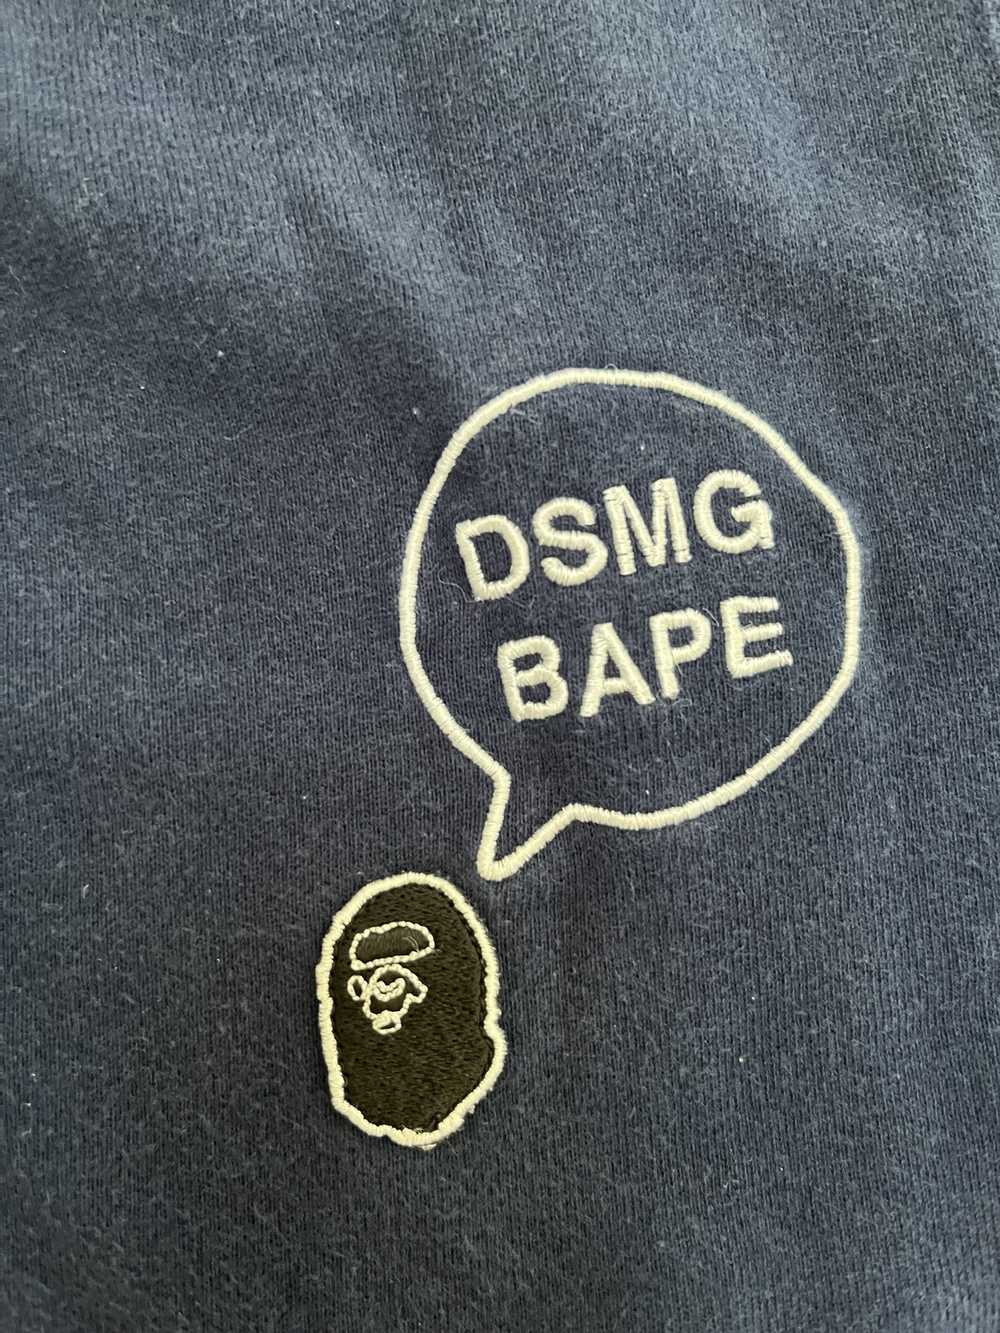 New Items at DSMG 